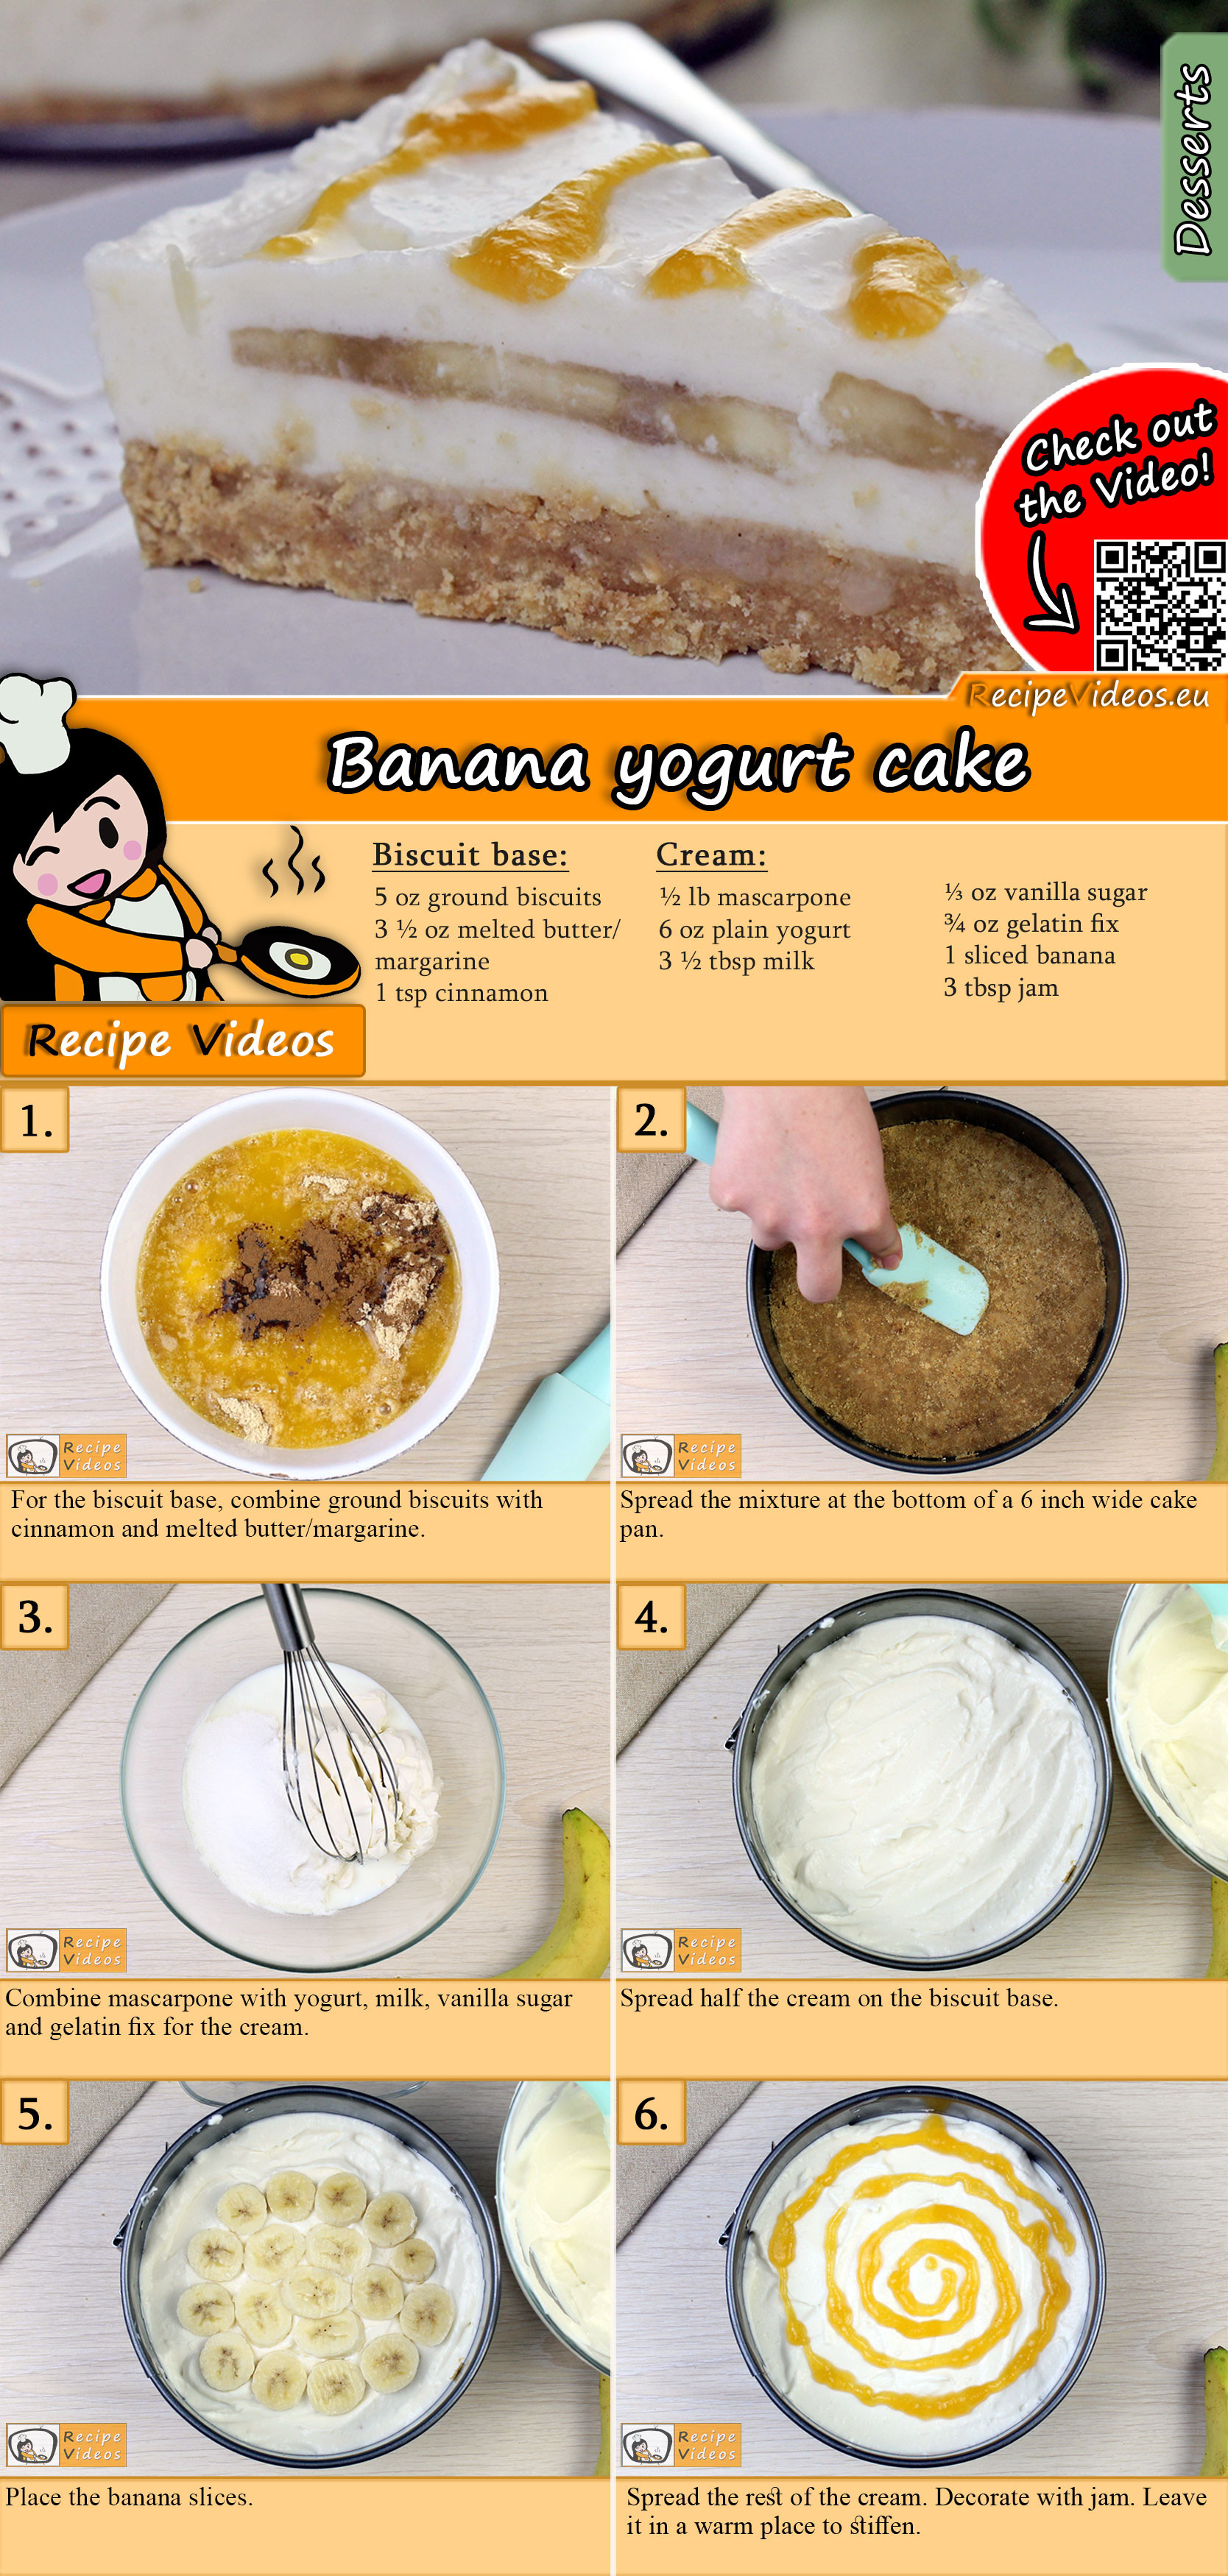 Banana yogurt cake recipe with video